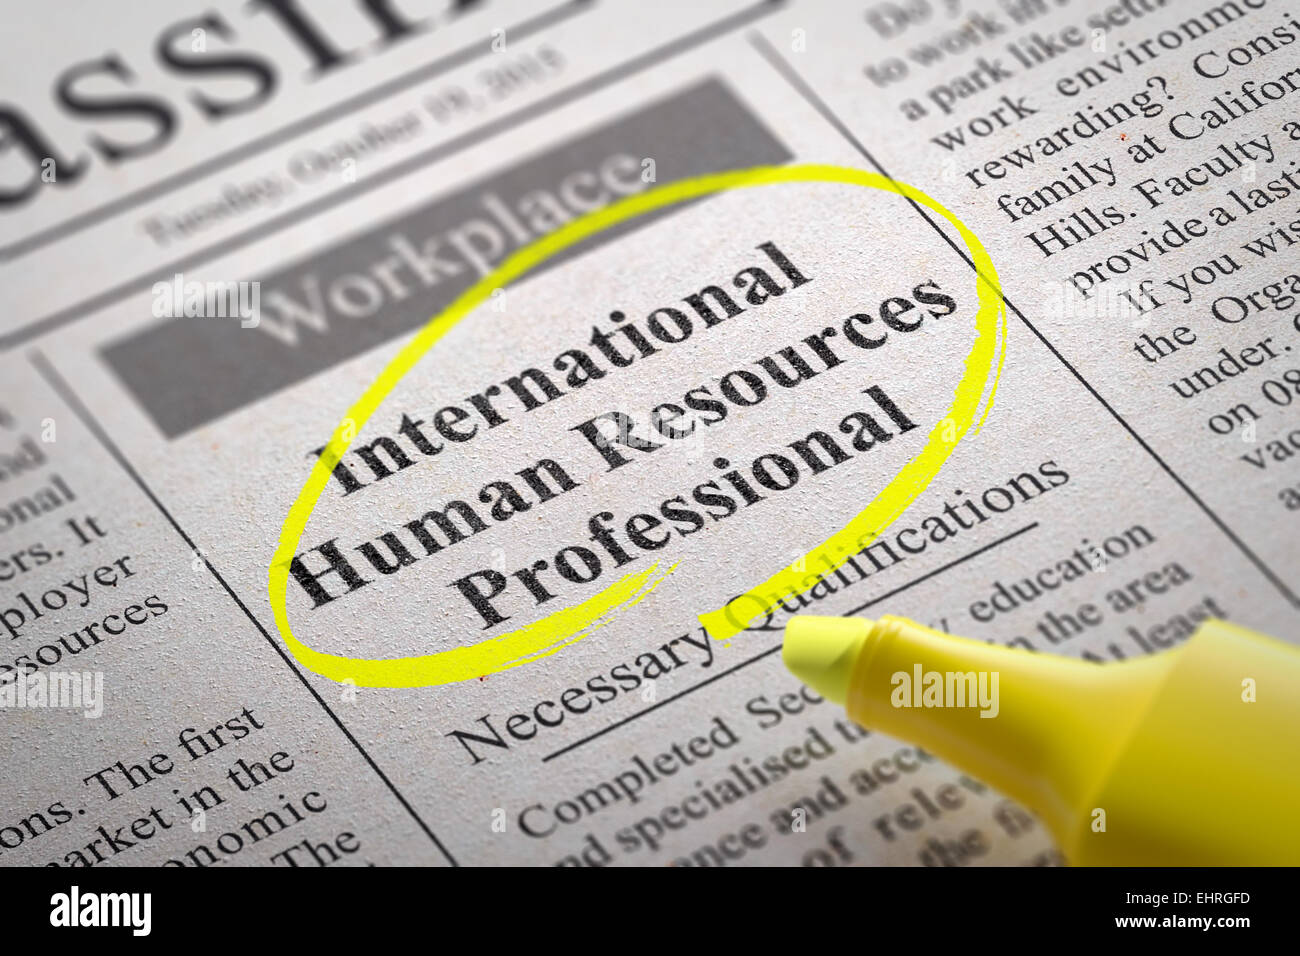 Profesional de recursos humanos internacional vacante en el periódico. Foto de stock